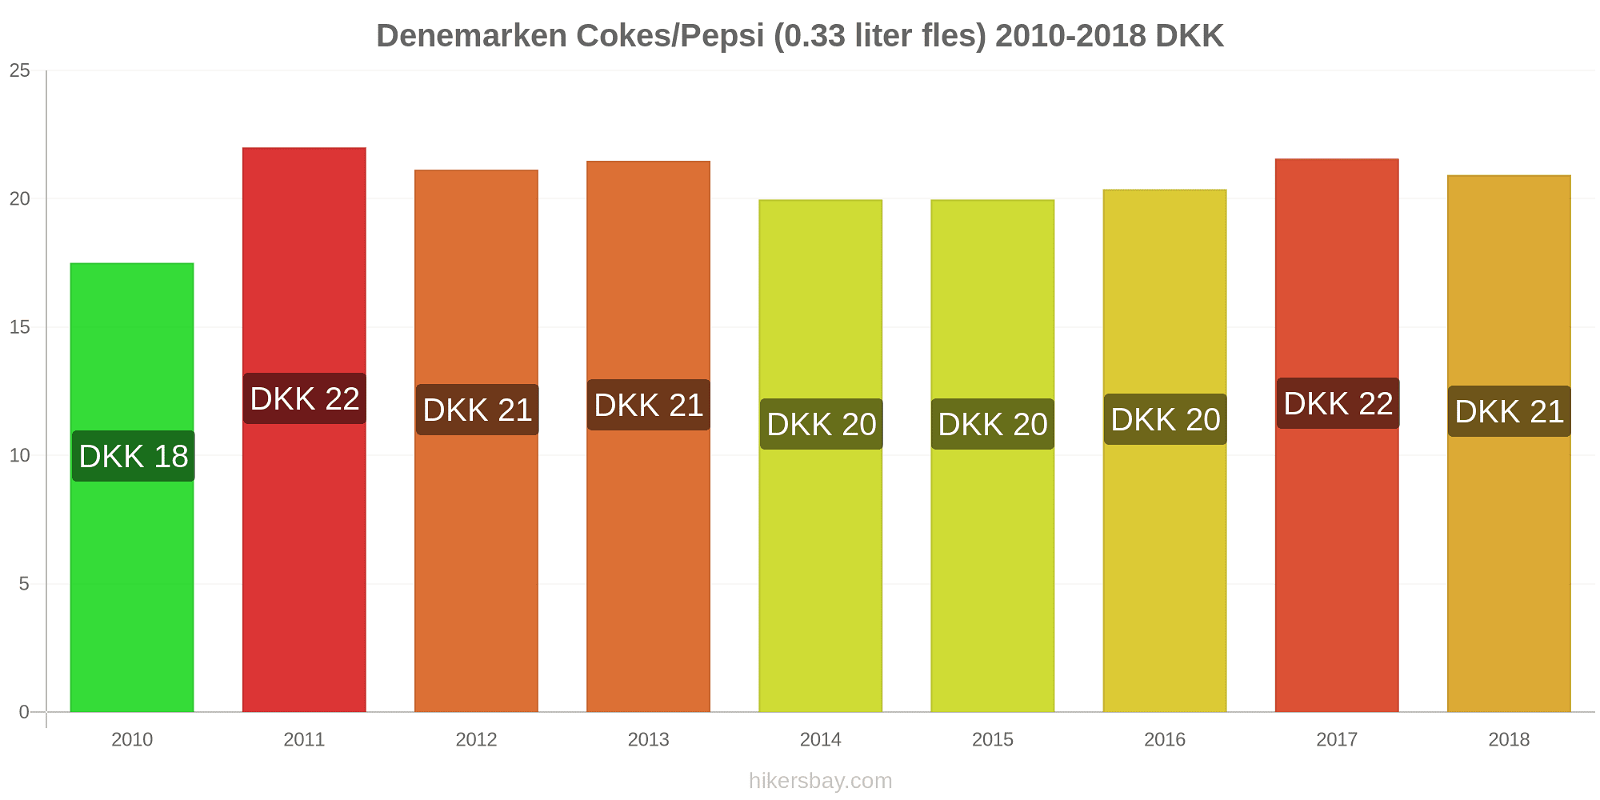 Denemarken prijswijzigingen Cokes/Pepsi (0,33 literfles) hikersbay.com